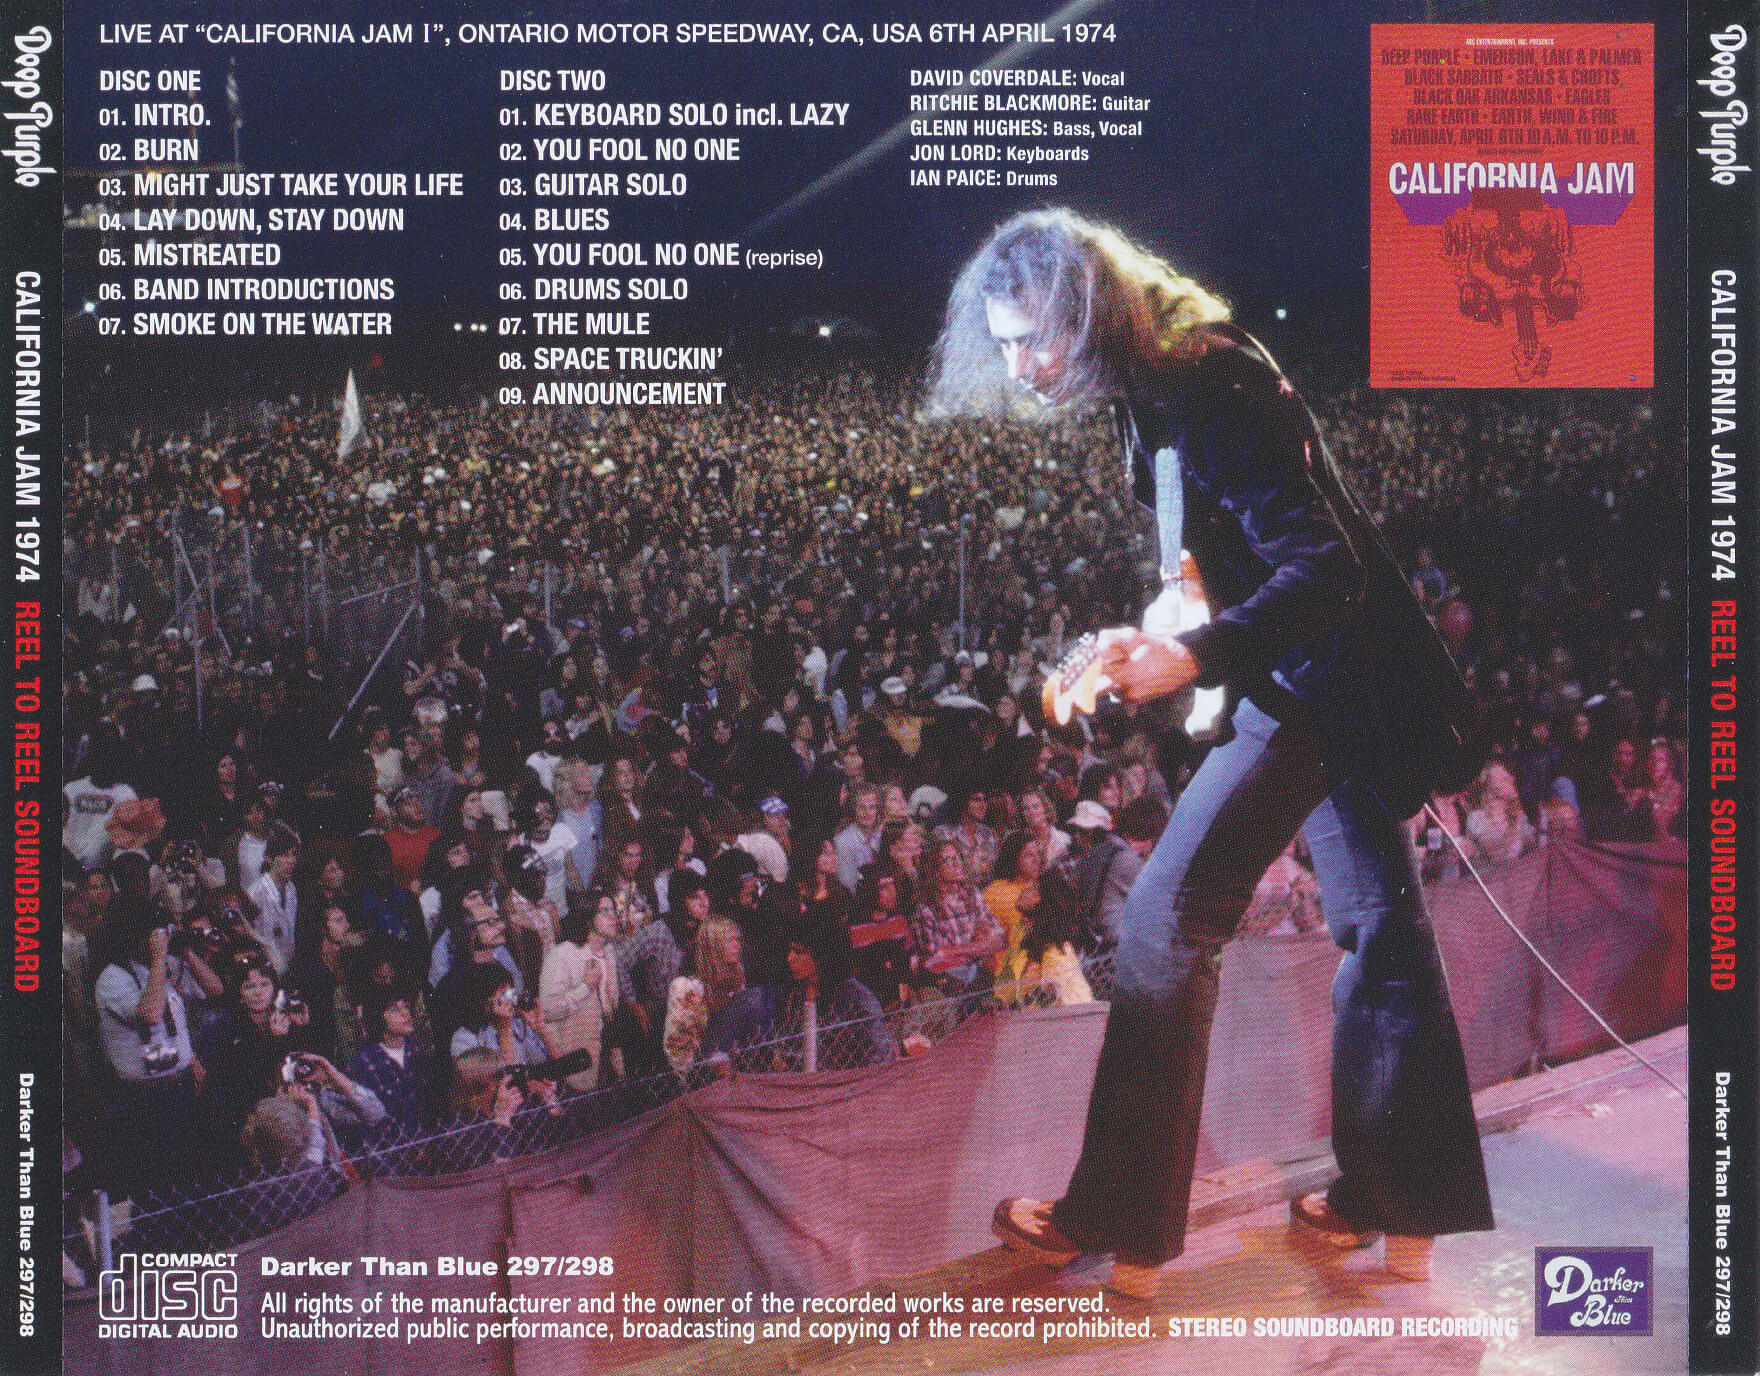 Deep Purple / California Jam 1974 Reel To Reel Soundboard / 2CD